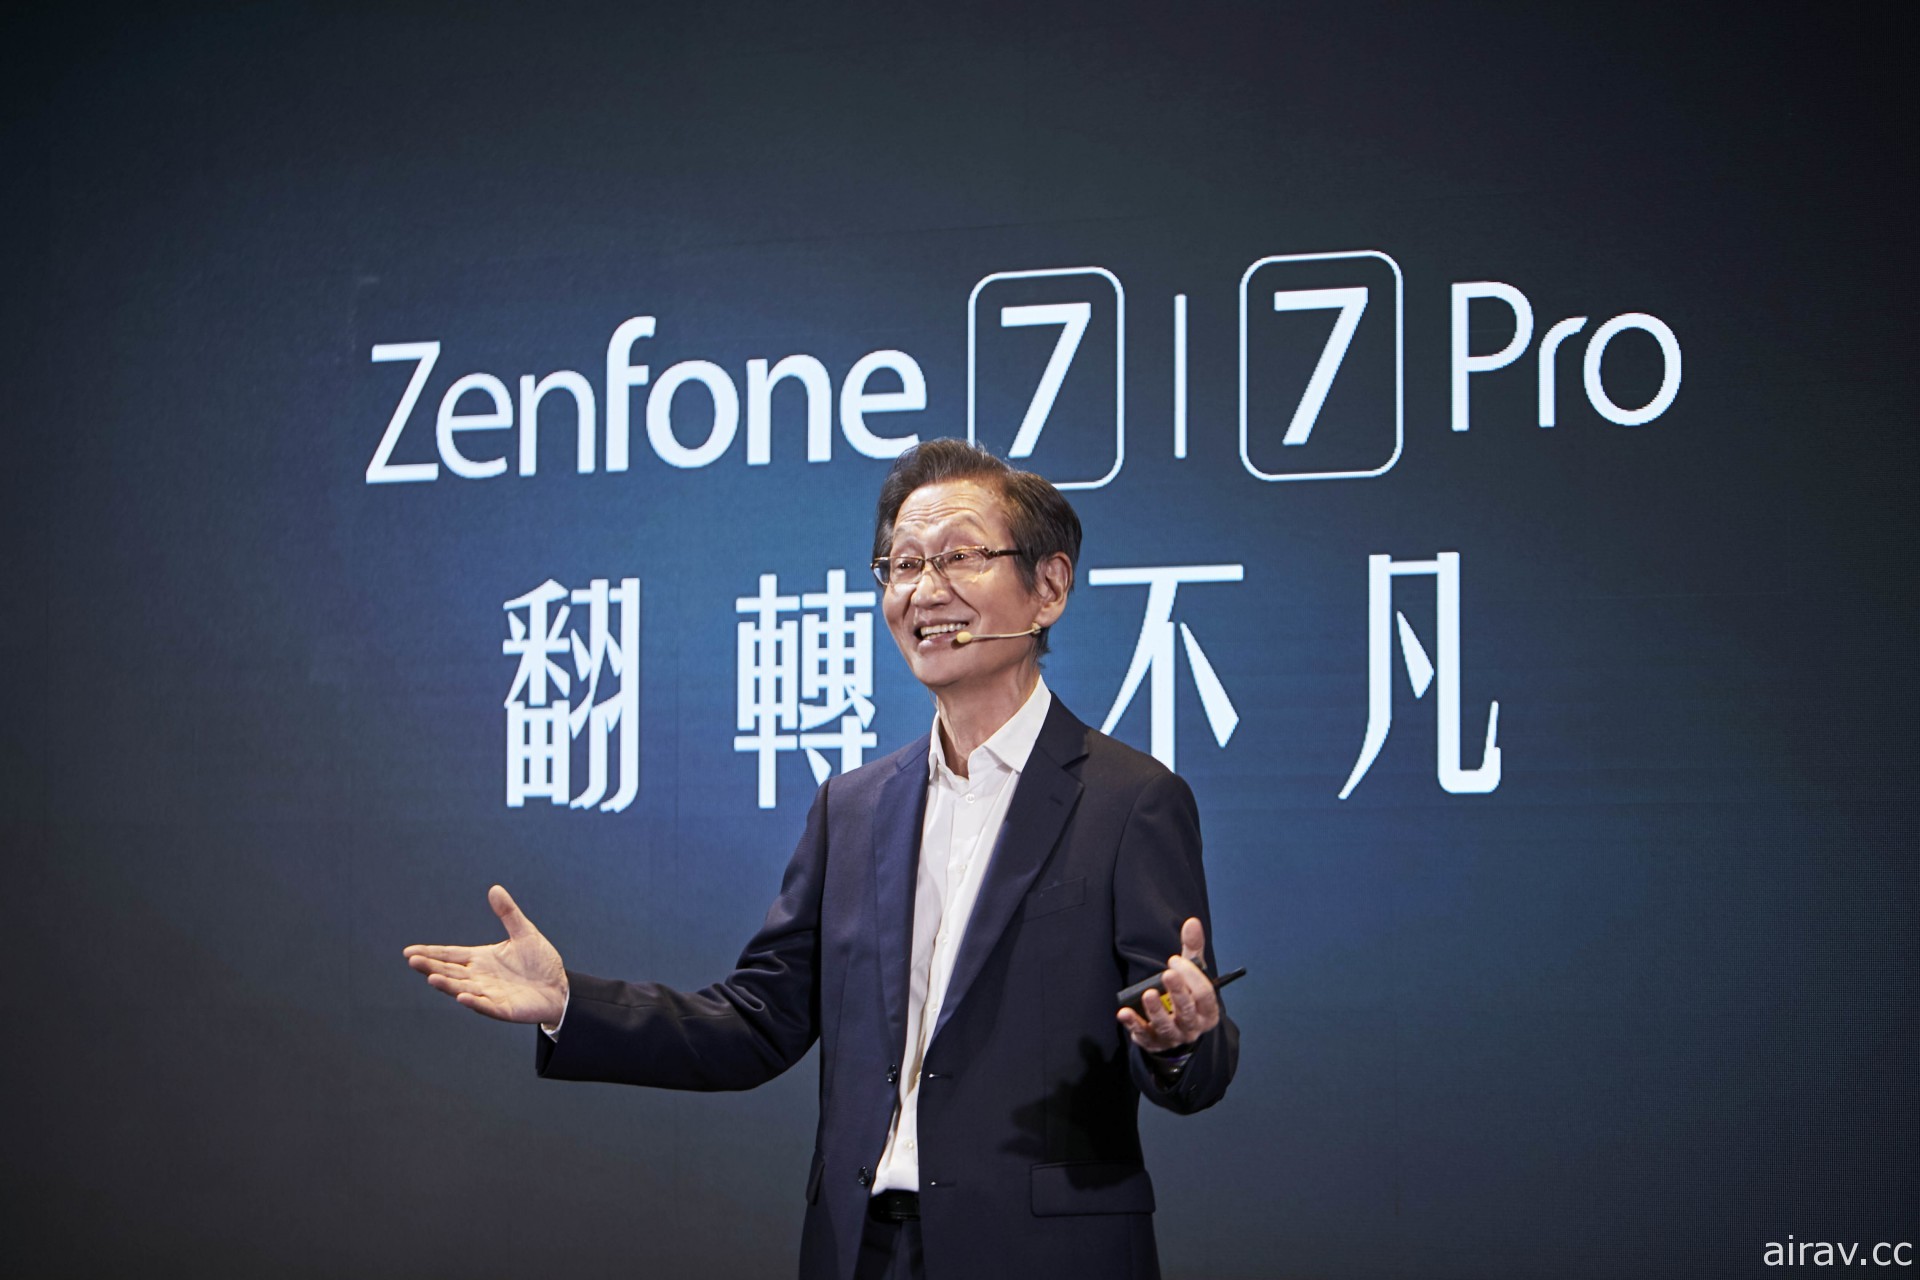 華碩最新 5G 旗艦型智慧手機 ASUS ZenFone 7 / 7 Pro 今日搶先全球登場